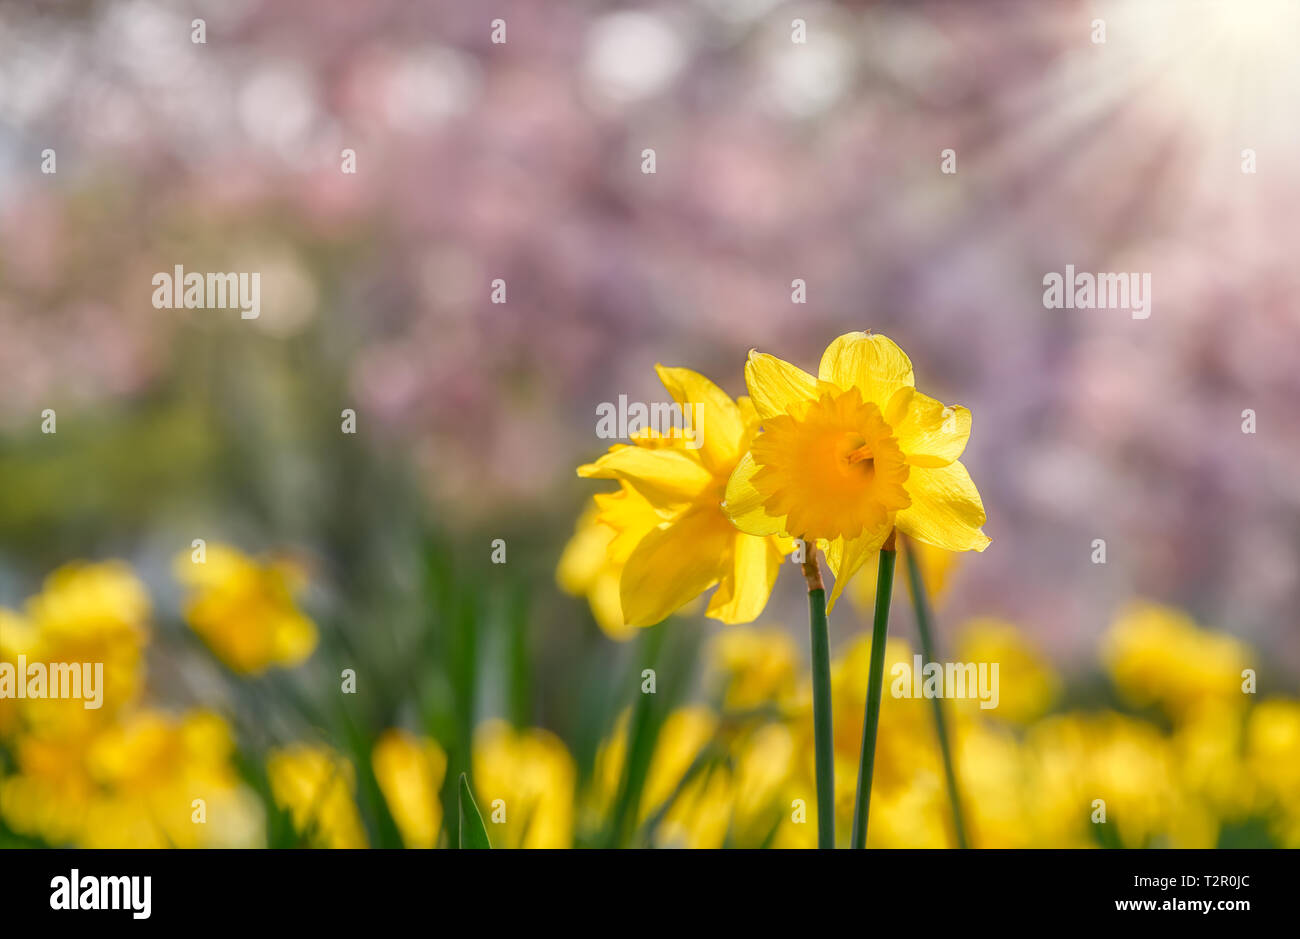 Gelb blühenden Wilden Narzisse, Narcissus pseudonarcissus, in einem Park mit rosa Baum Blüten im Hintergrund an einem sonnigen Tag im Frühjahr, Deutschland Stockfoto